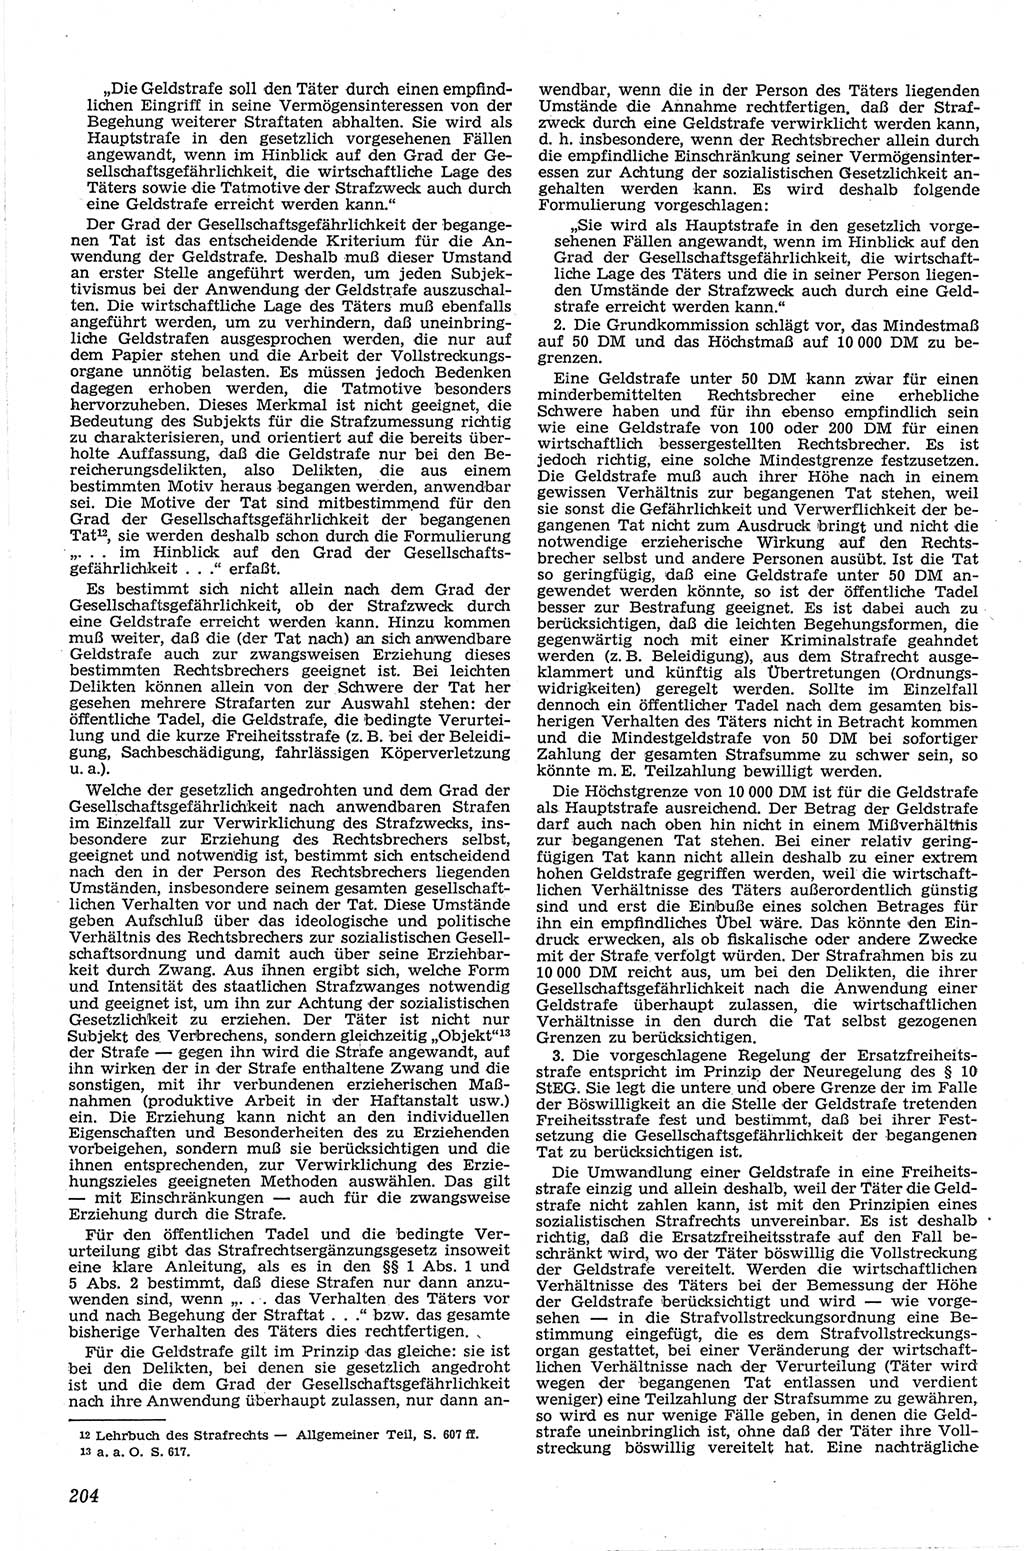 Neue Justiz (NJ), Zeitschrift für Recht und Rechtswissenschaft [Deutsche Demokratische Republik (DDR)], 13. Jahrgang 1959, Seite 204 (NJ DDR 1959, S. 204)